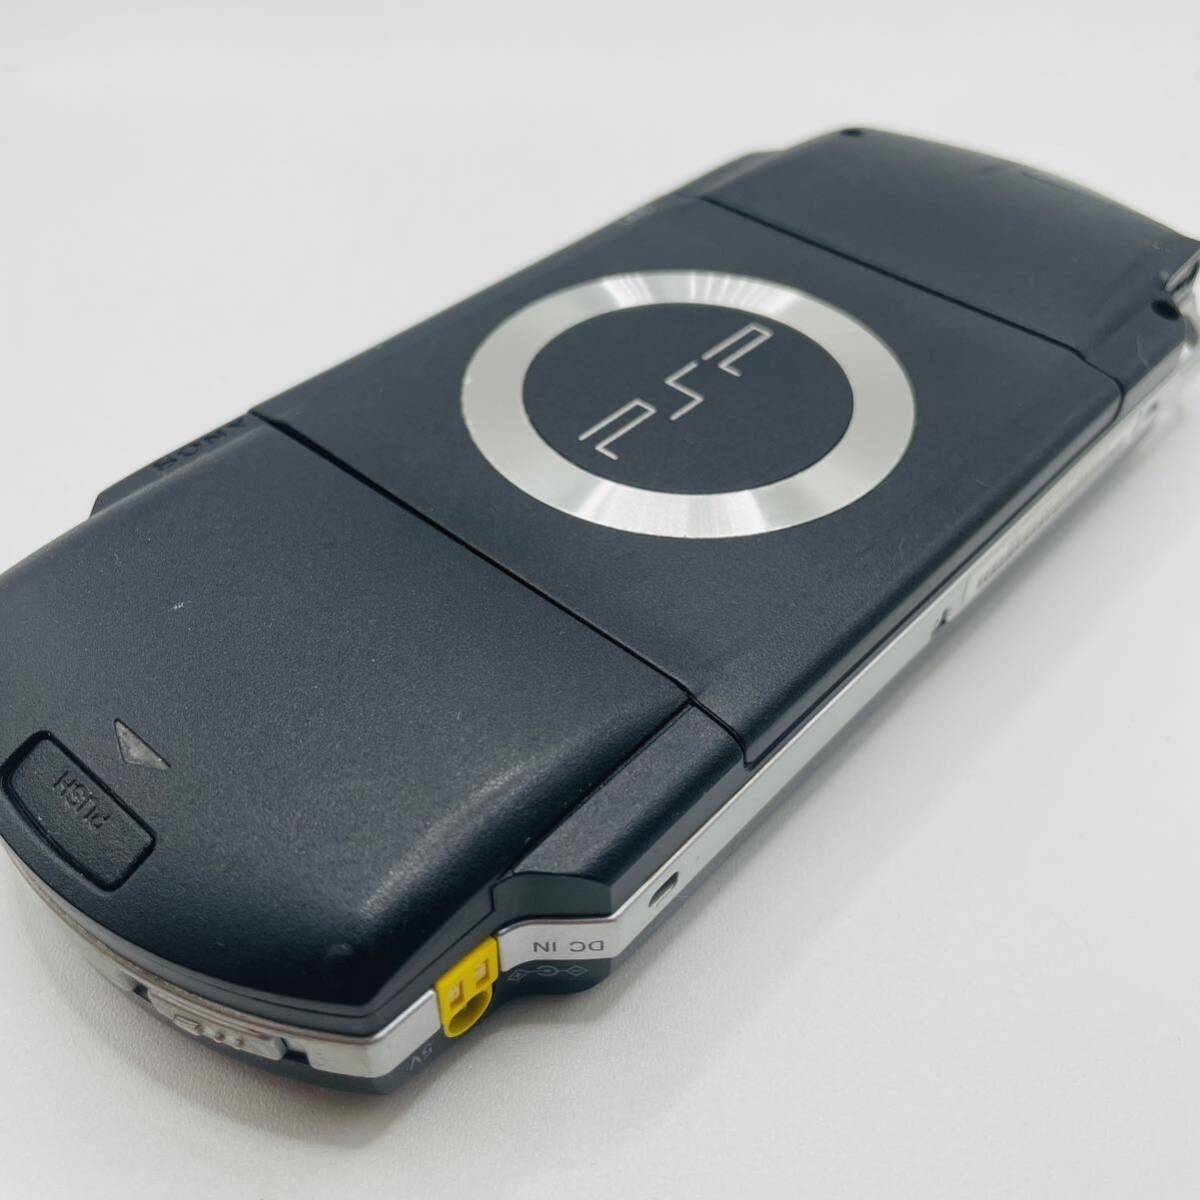  рабочее состояние подтверждено прекрасный товар PSP-1000 черный PSP корпус SONY Sony черный 